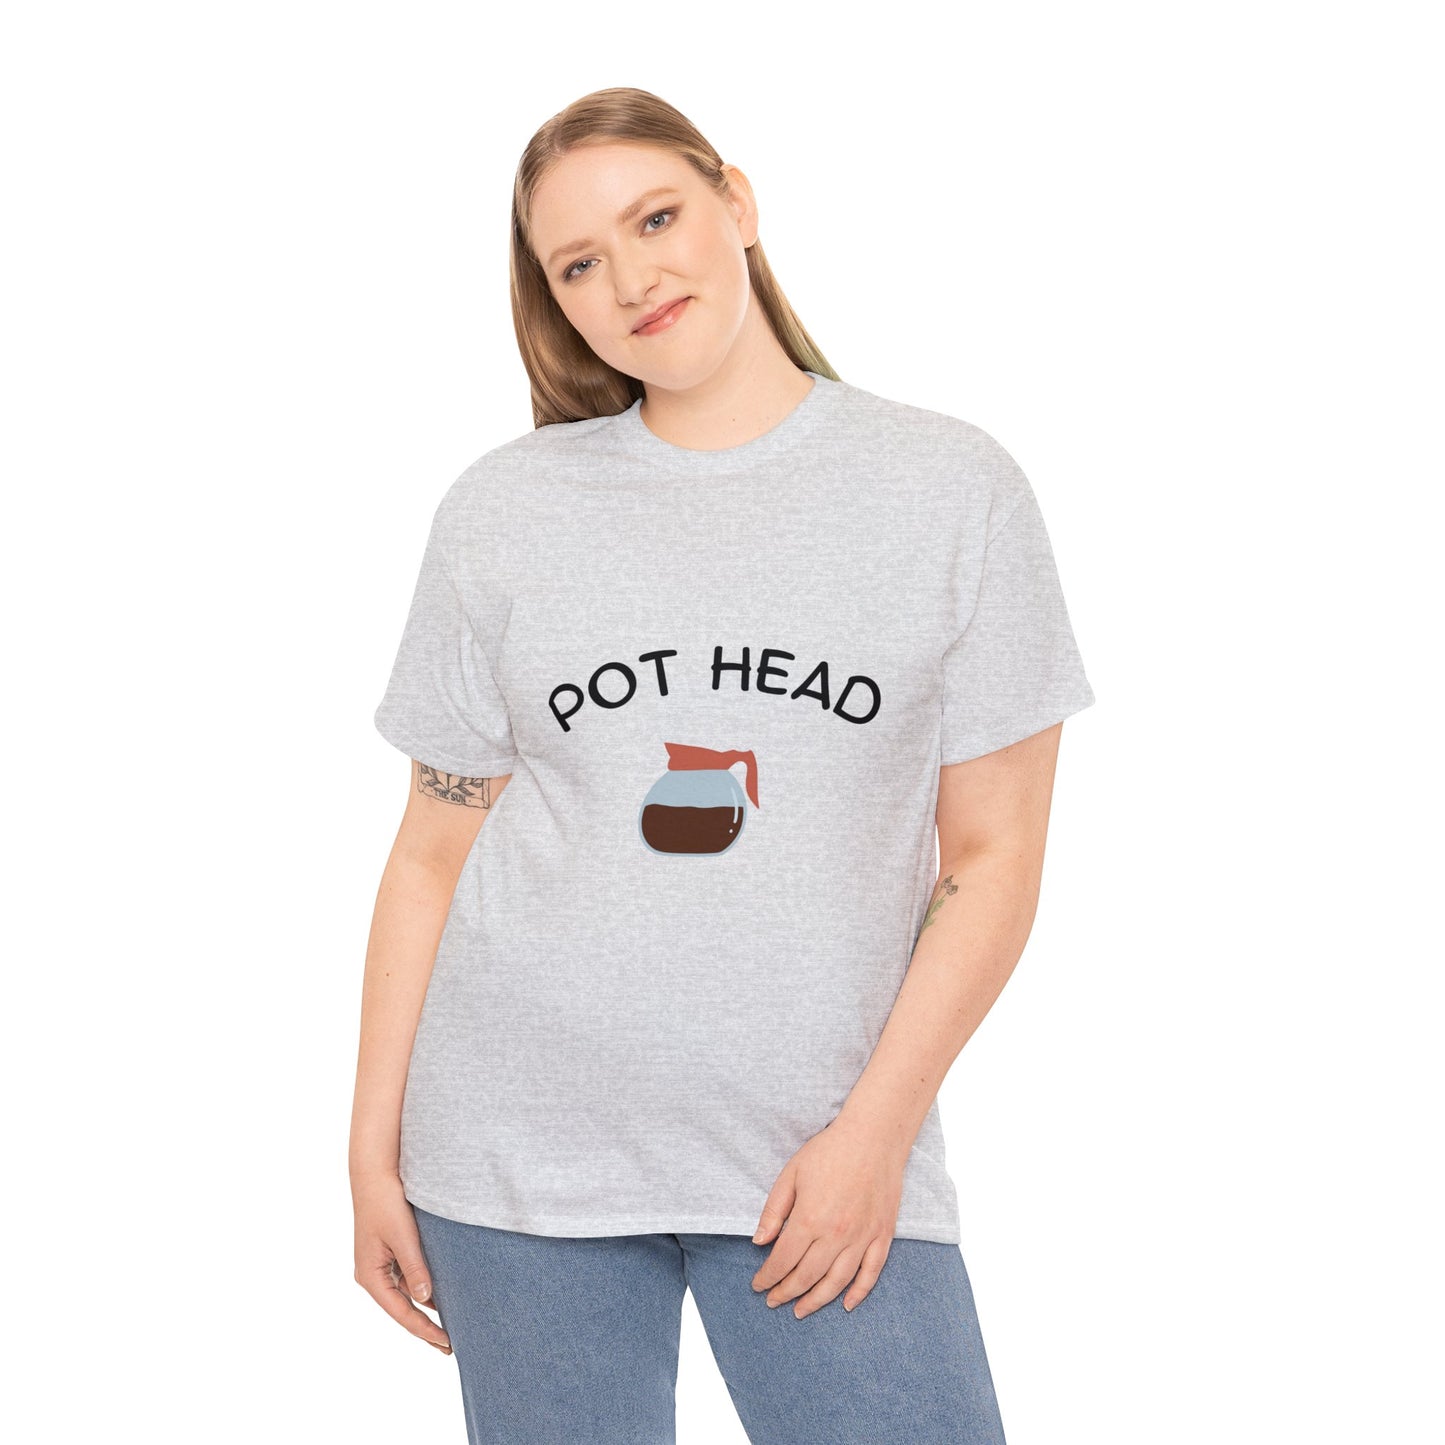 "Pot Head" - Tee